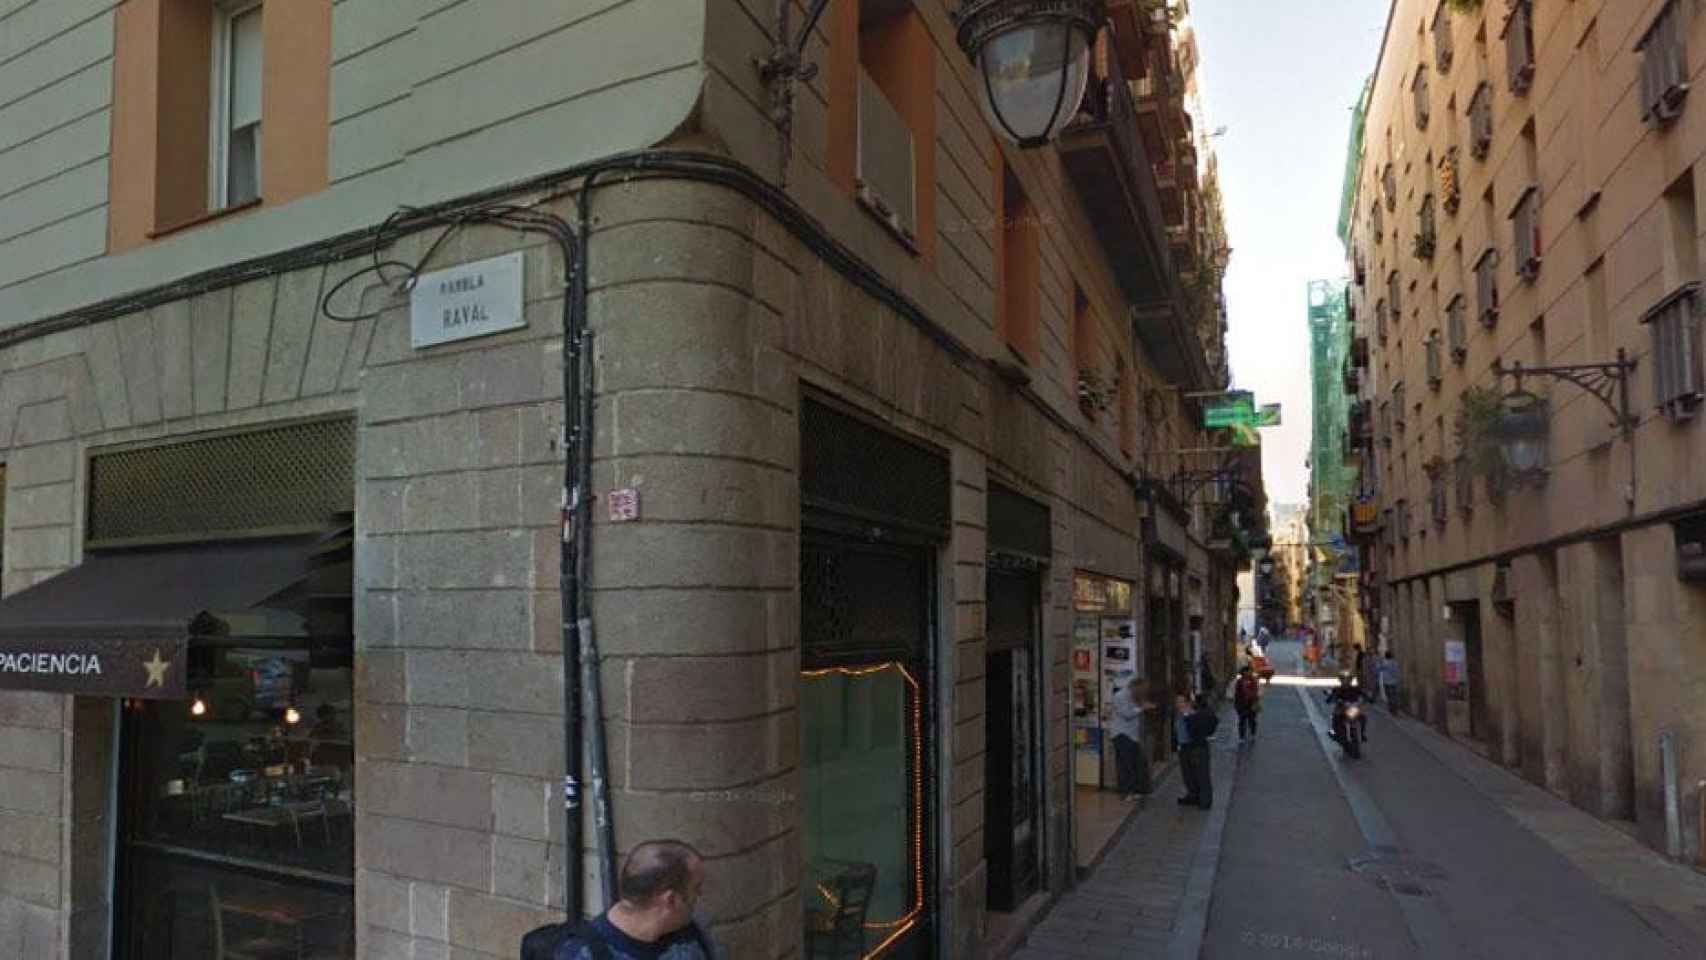 La calle Sant Pau en el Raval, donde han apuñalado a una mujer / GOOGLE MAPS